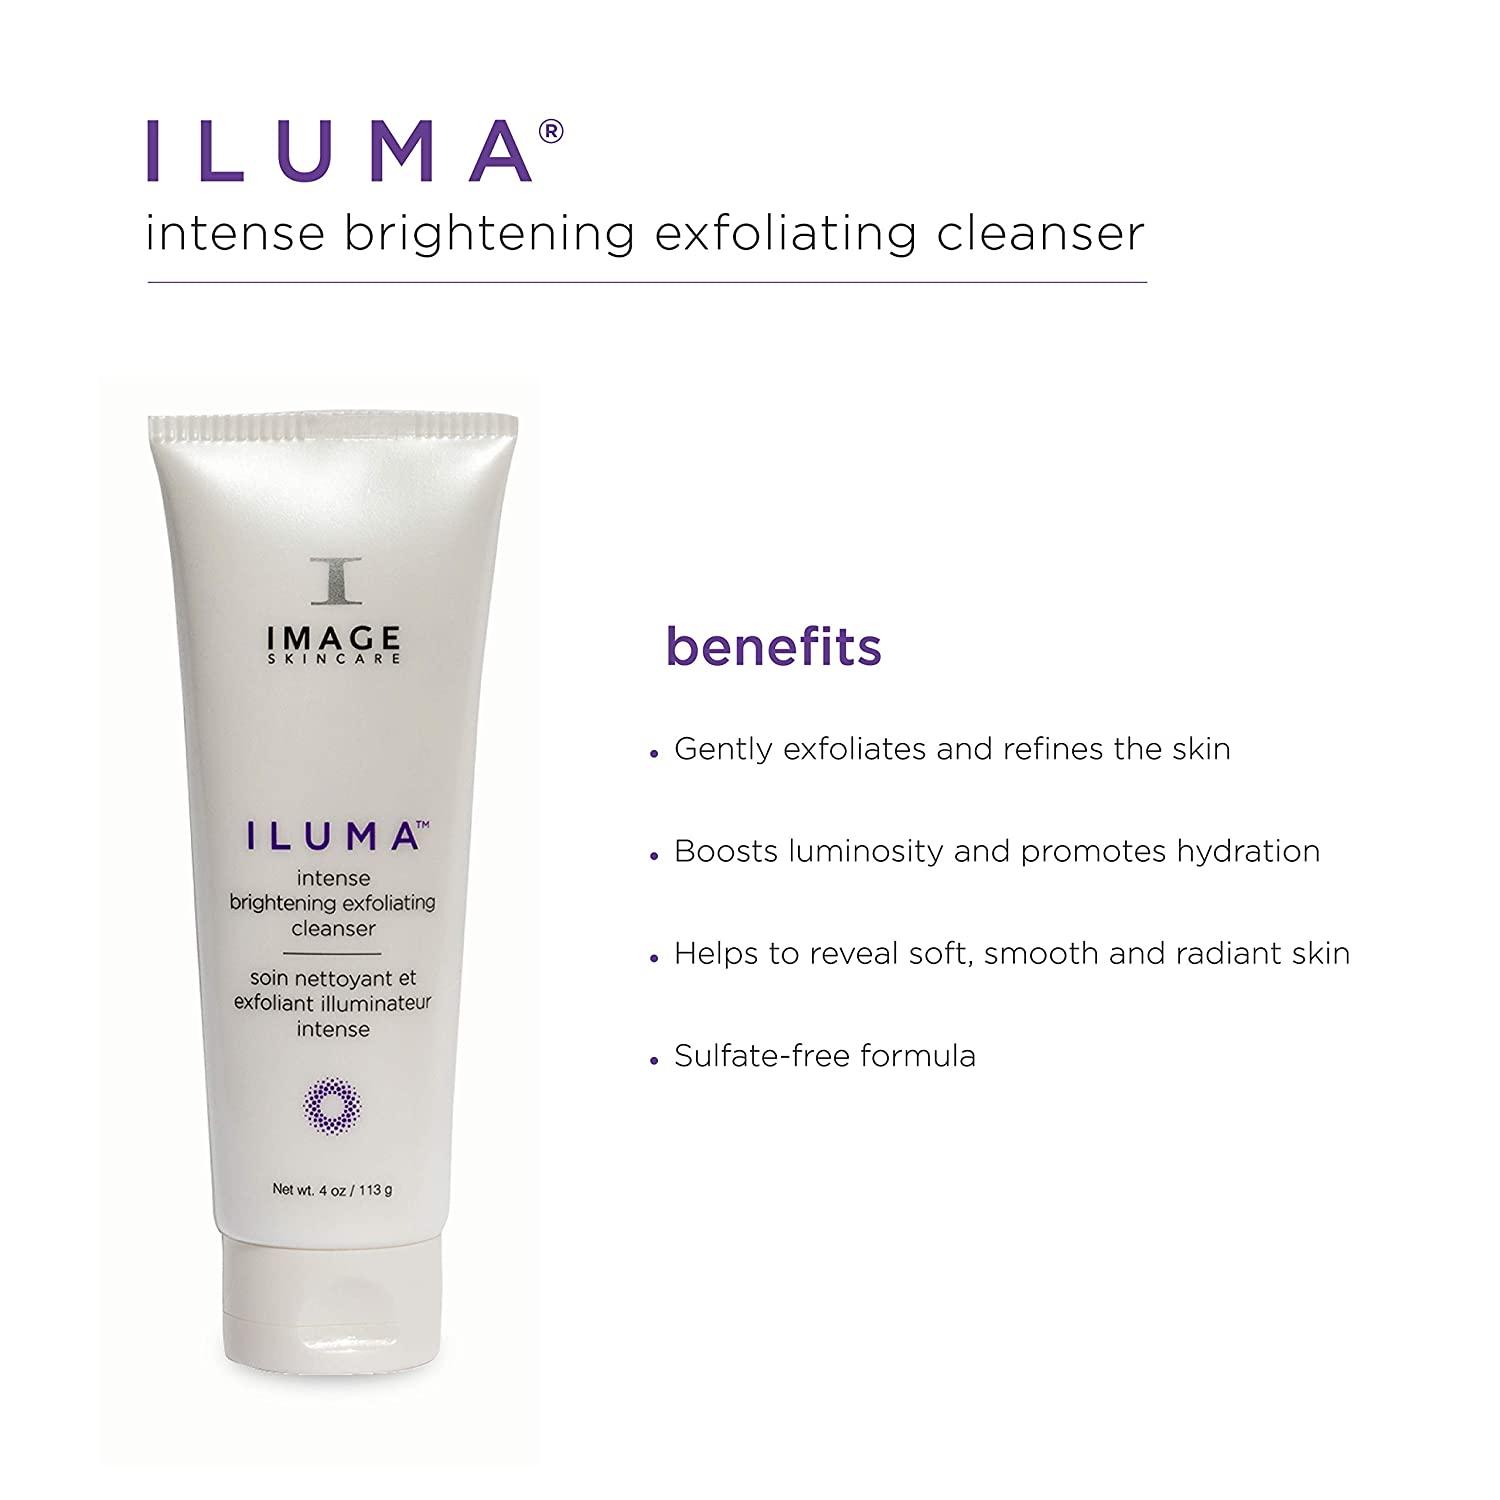 Image Skincare Iluma Intense Brightening Exfoliating Cleanser 4 oz, 4 oz.